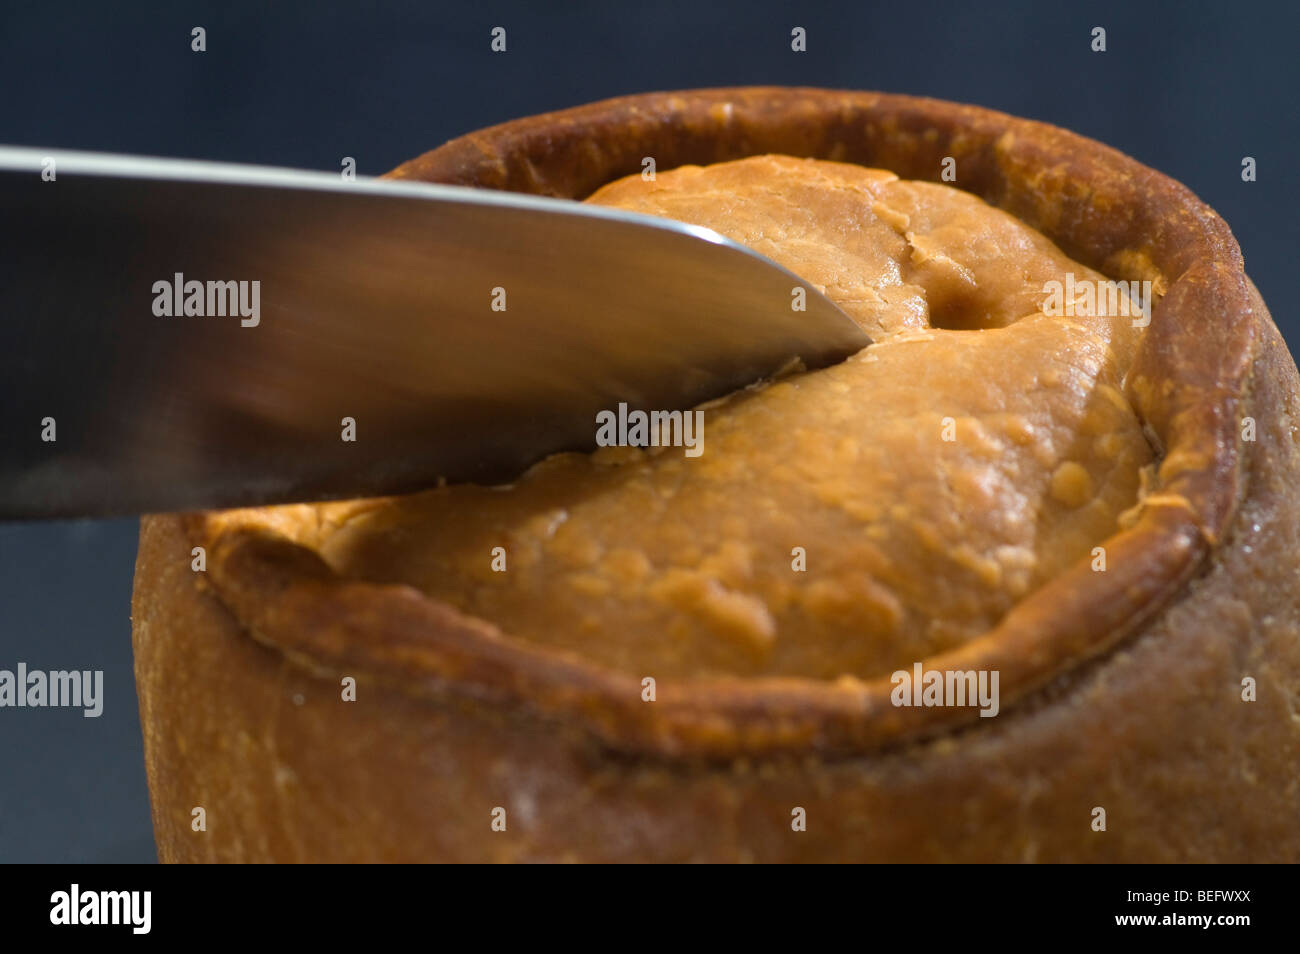 Cutting a Melton Mowbray pork pie. Stock Photo